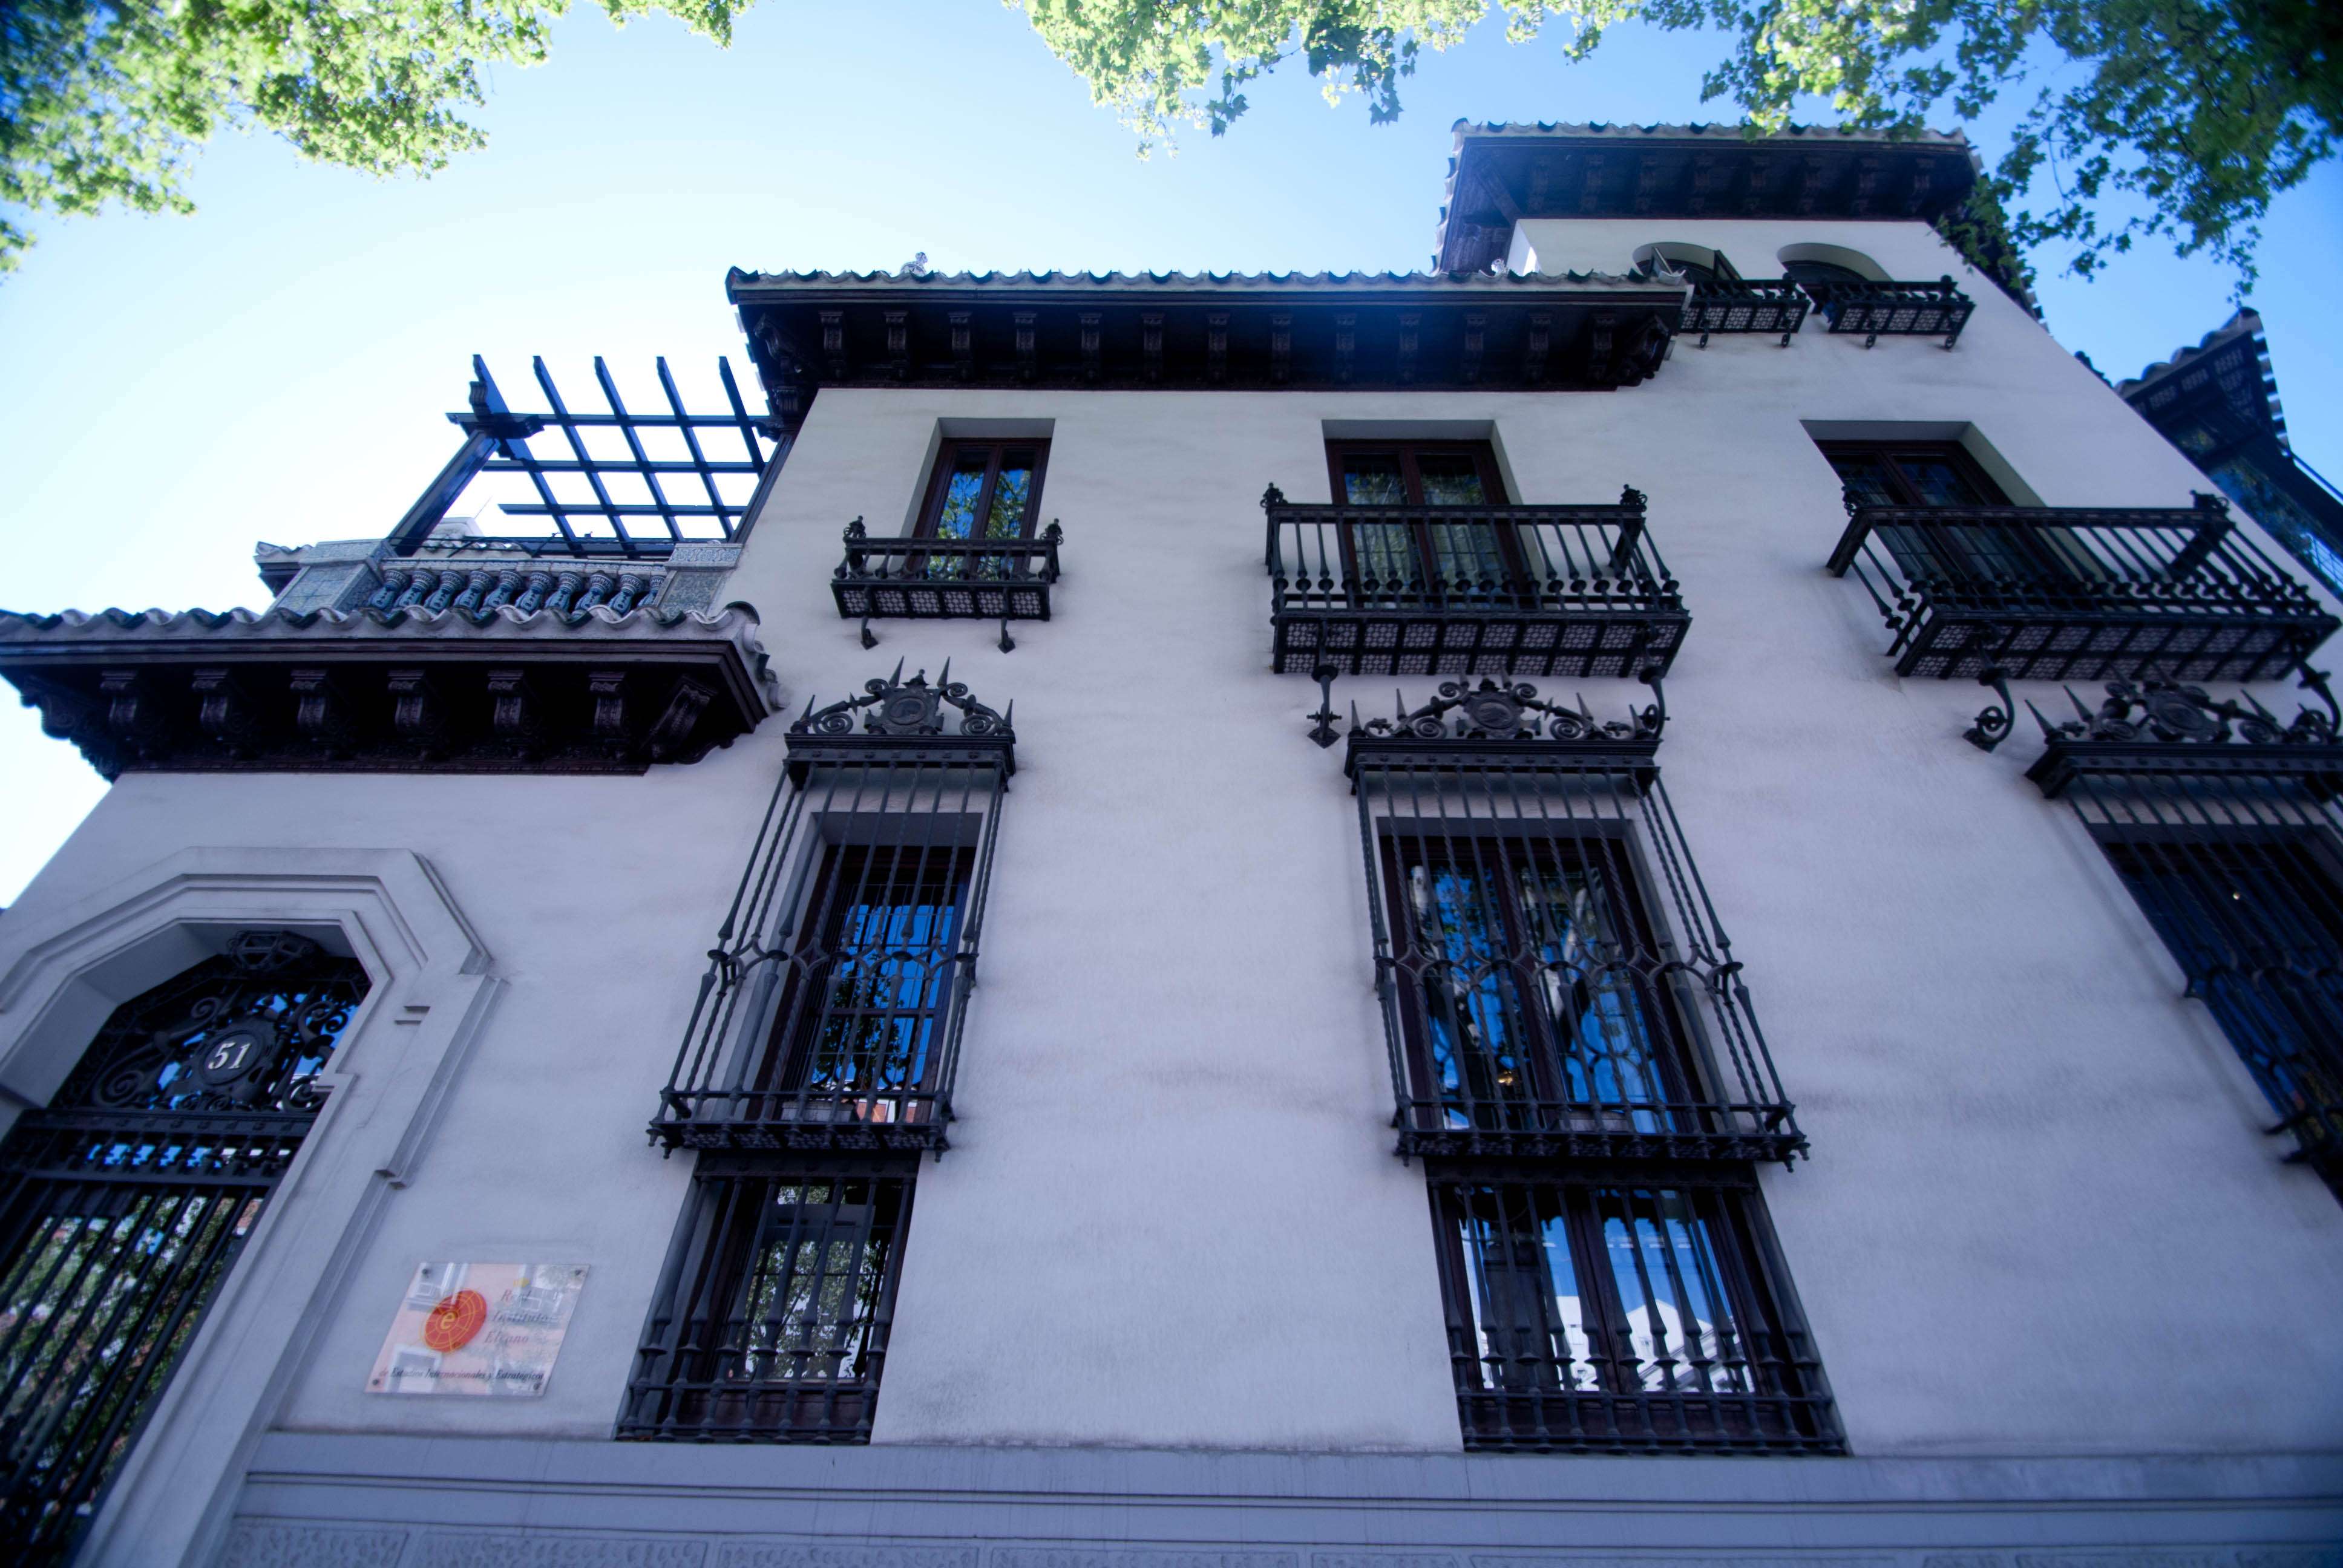 Paseos y Rutas por Madrid - Blogs de España - De Palacetes por el Barrio de Salamanca (14)